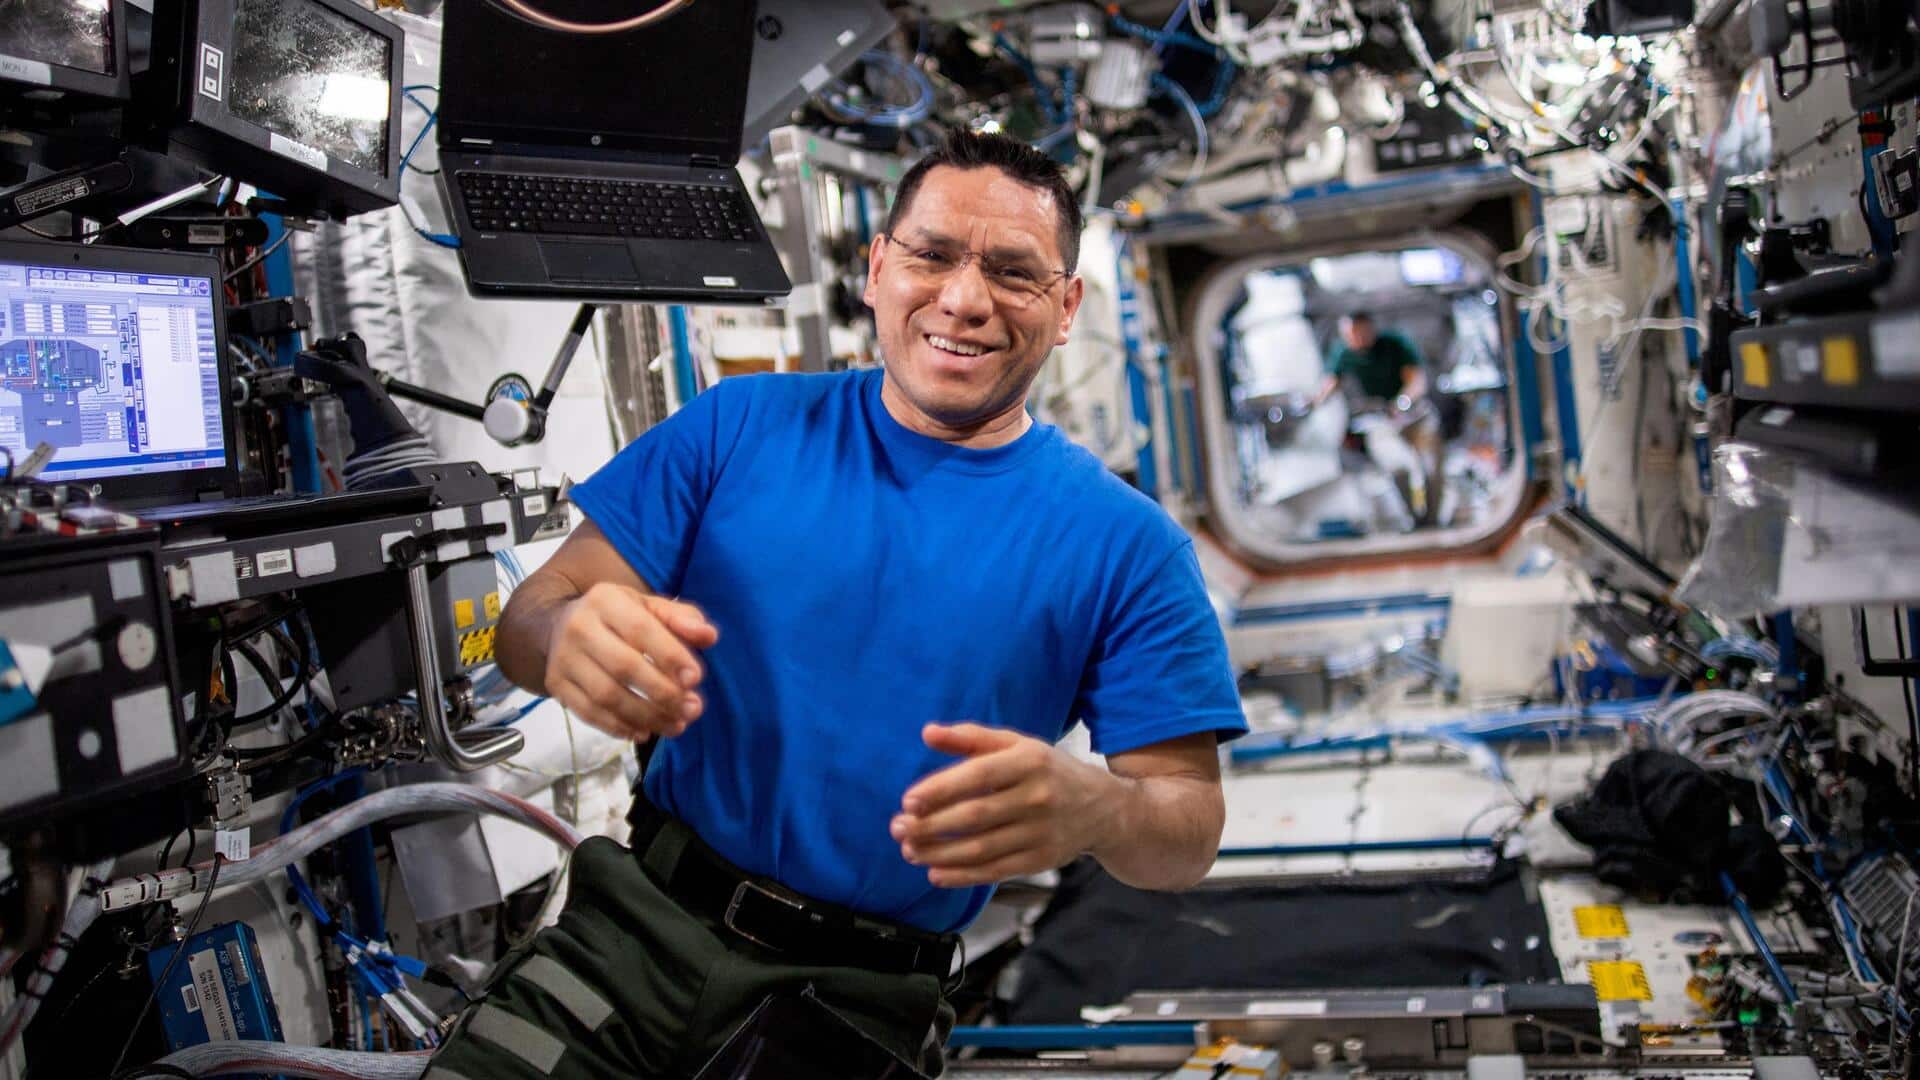 फ्रैंक रुबियो ने अंतरराष्ट्रीय स्पेस स्टेशन में बिताए 371 दिन, बनाया नया रिकॉर्ड